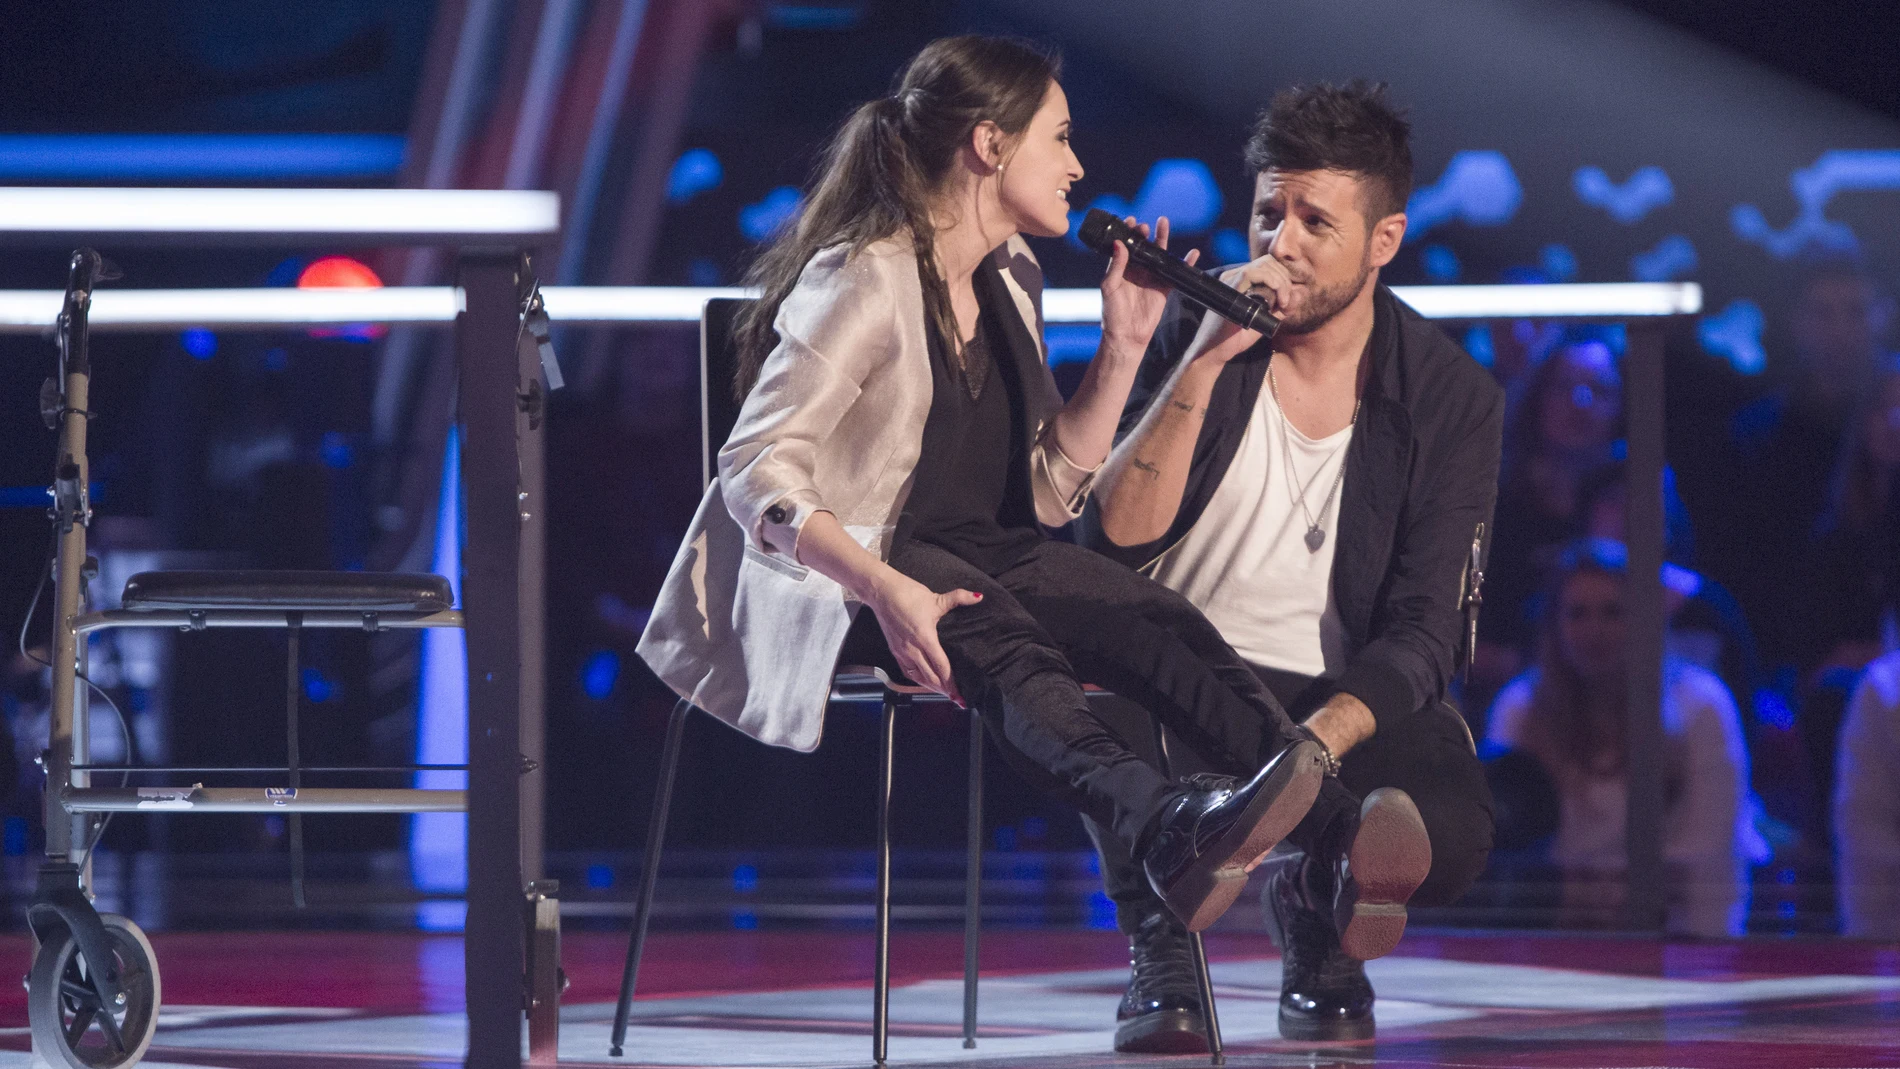 VÍDEO-LA VOZ:Pablo López canta con Miriam Fernández con mucha emoción ‘Sin miedo a nada’ en ‘La Voz’